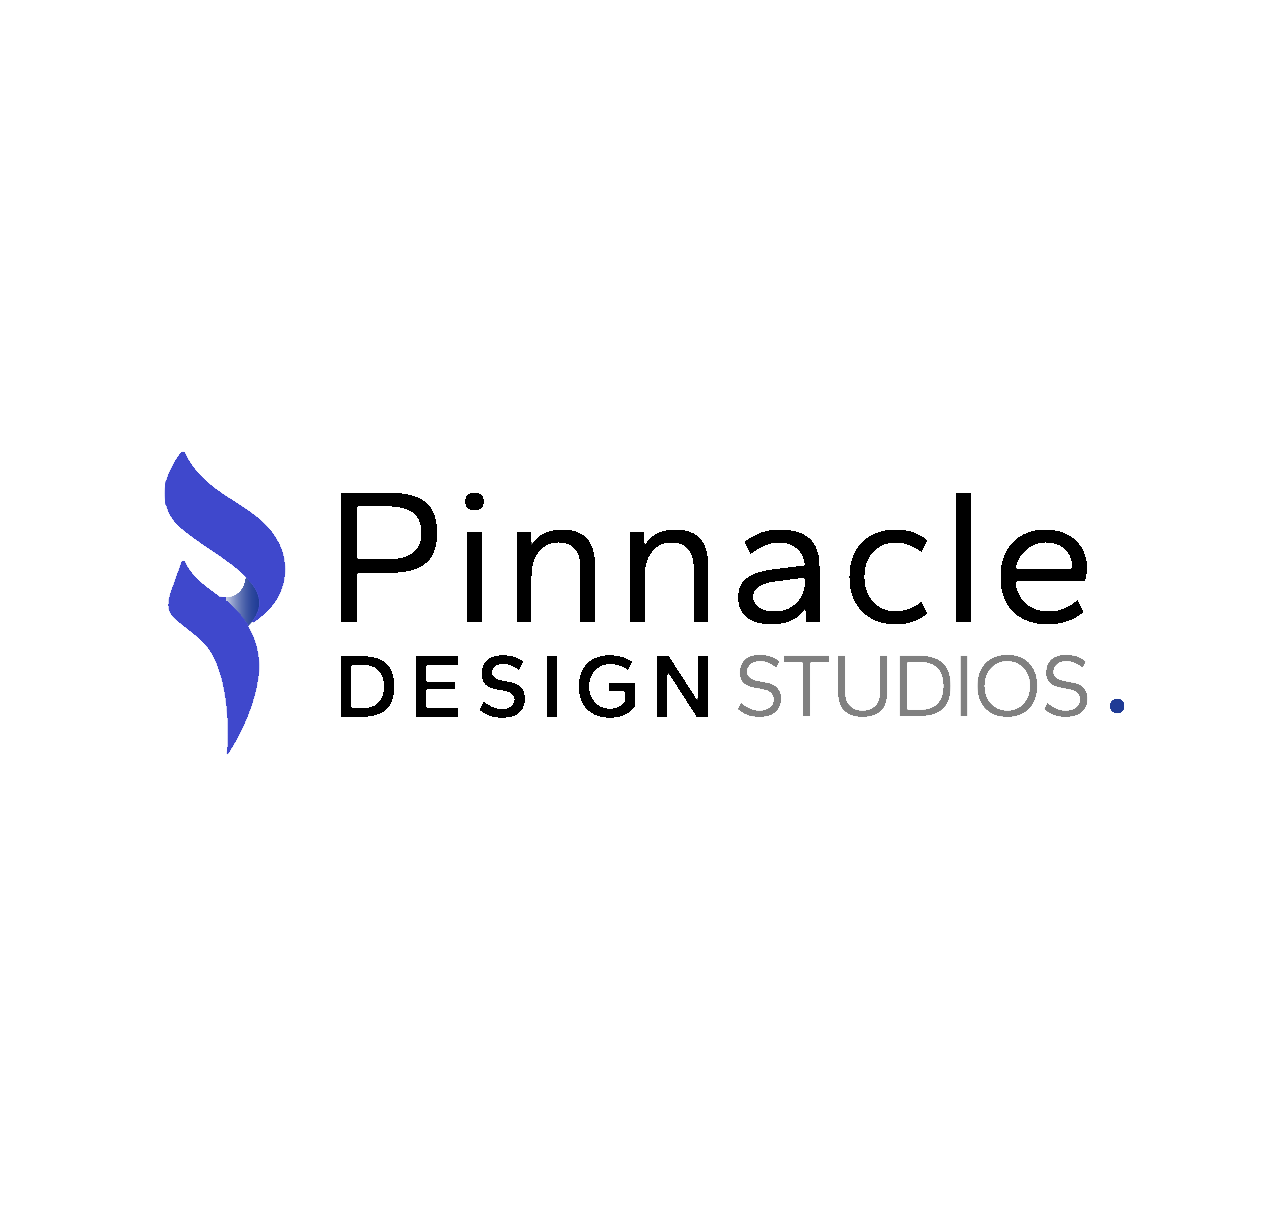 Pinnacle Design Studios